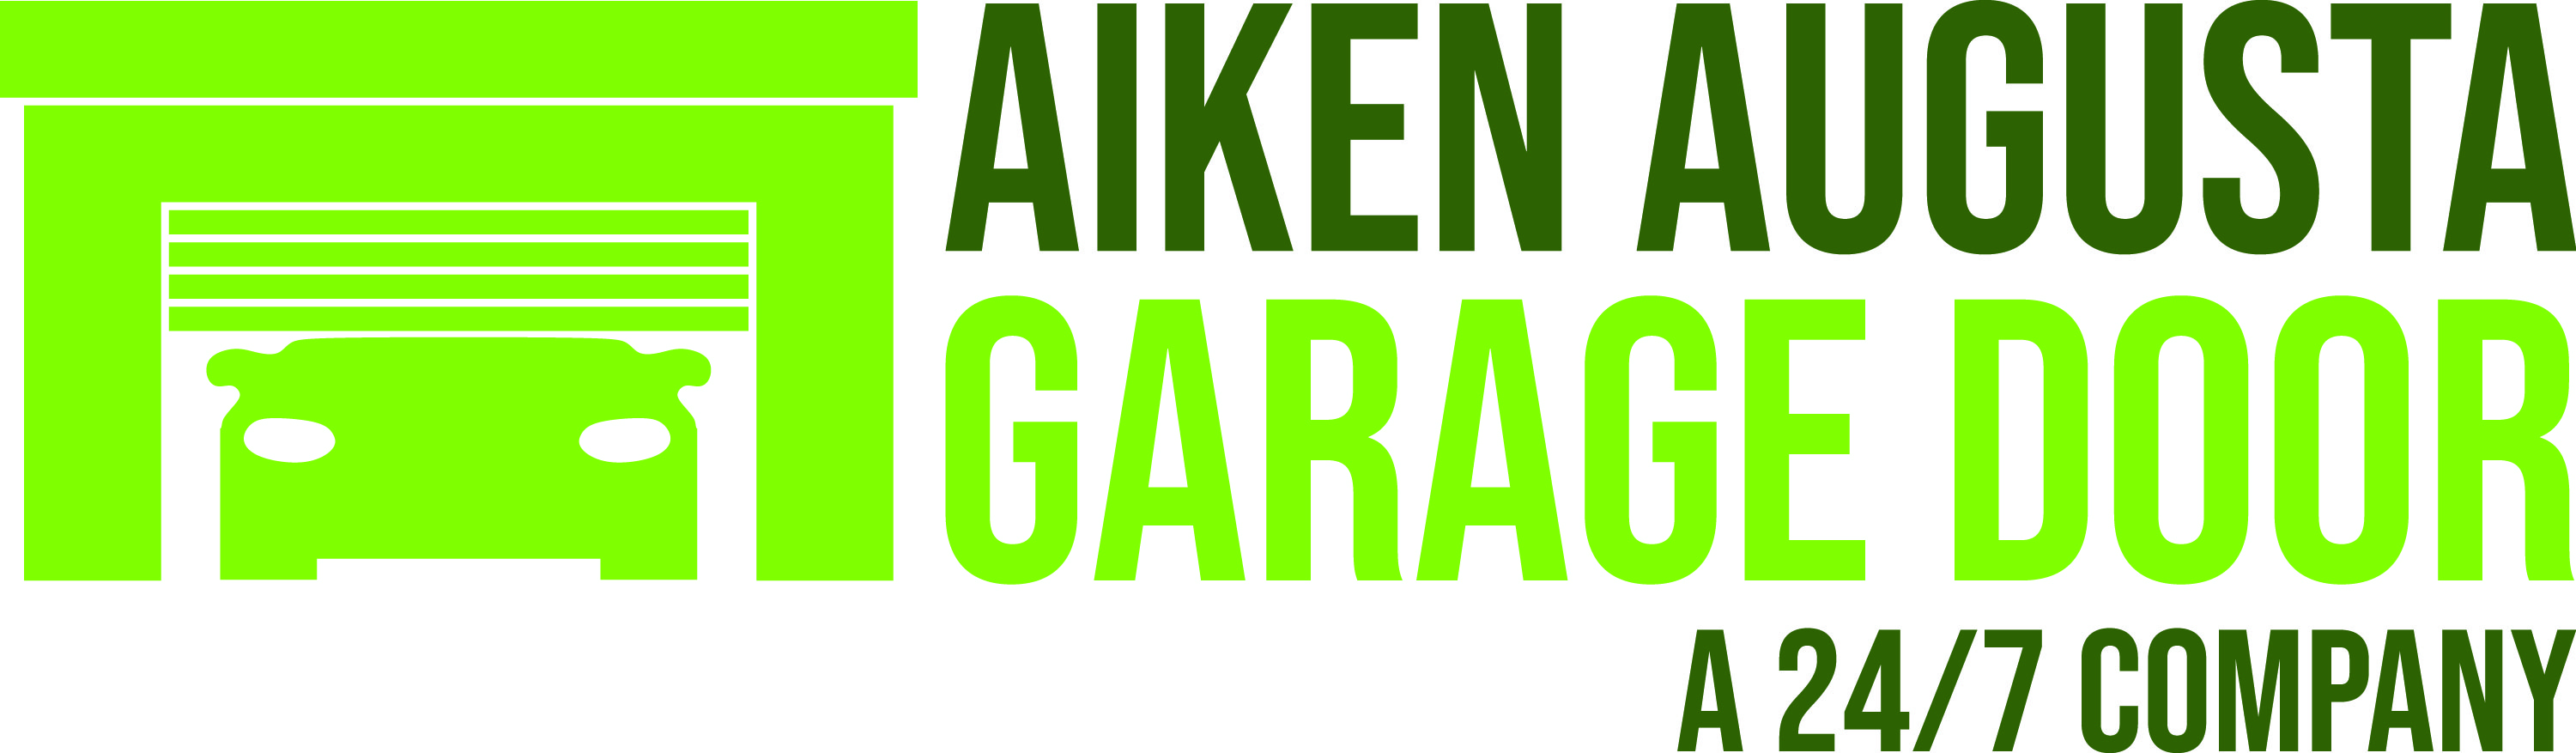 Aiken Augusta Garage Door, LLC Logo